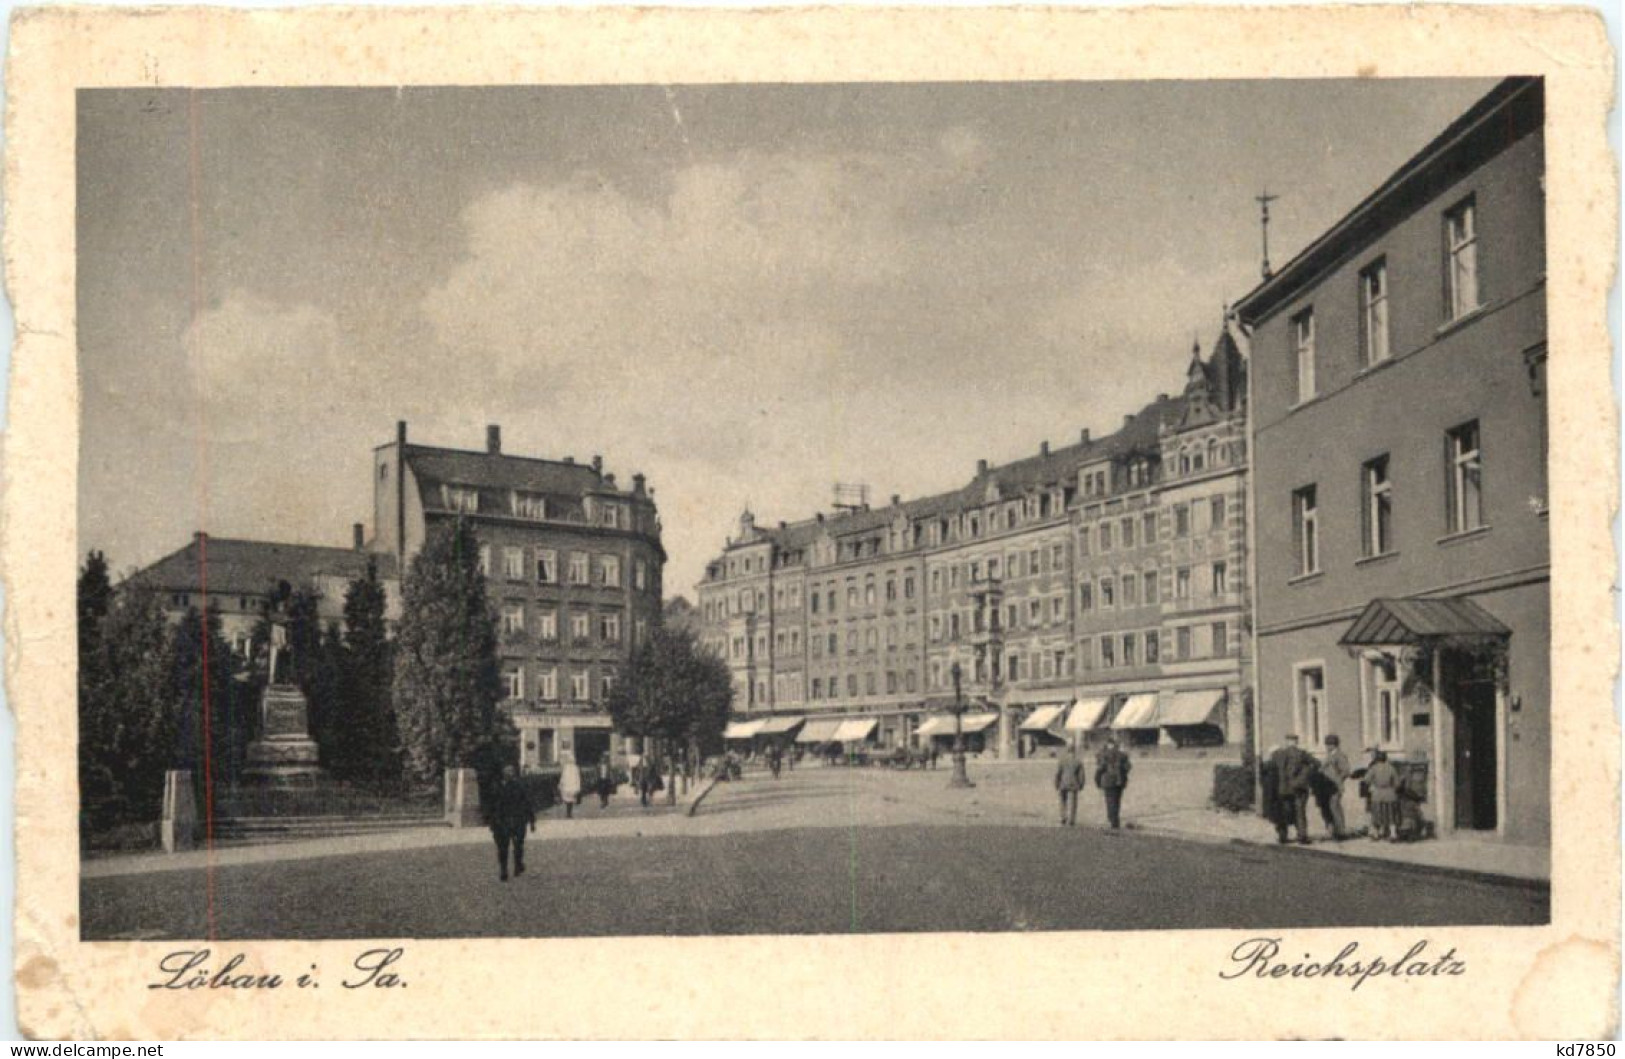 Löbau In Sachsen - Reichsplatz - Loebau